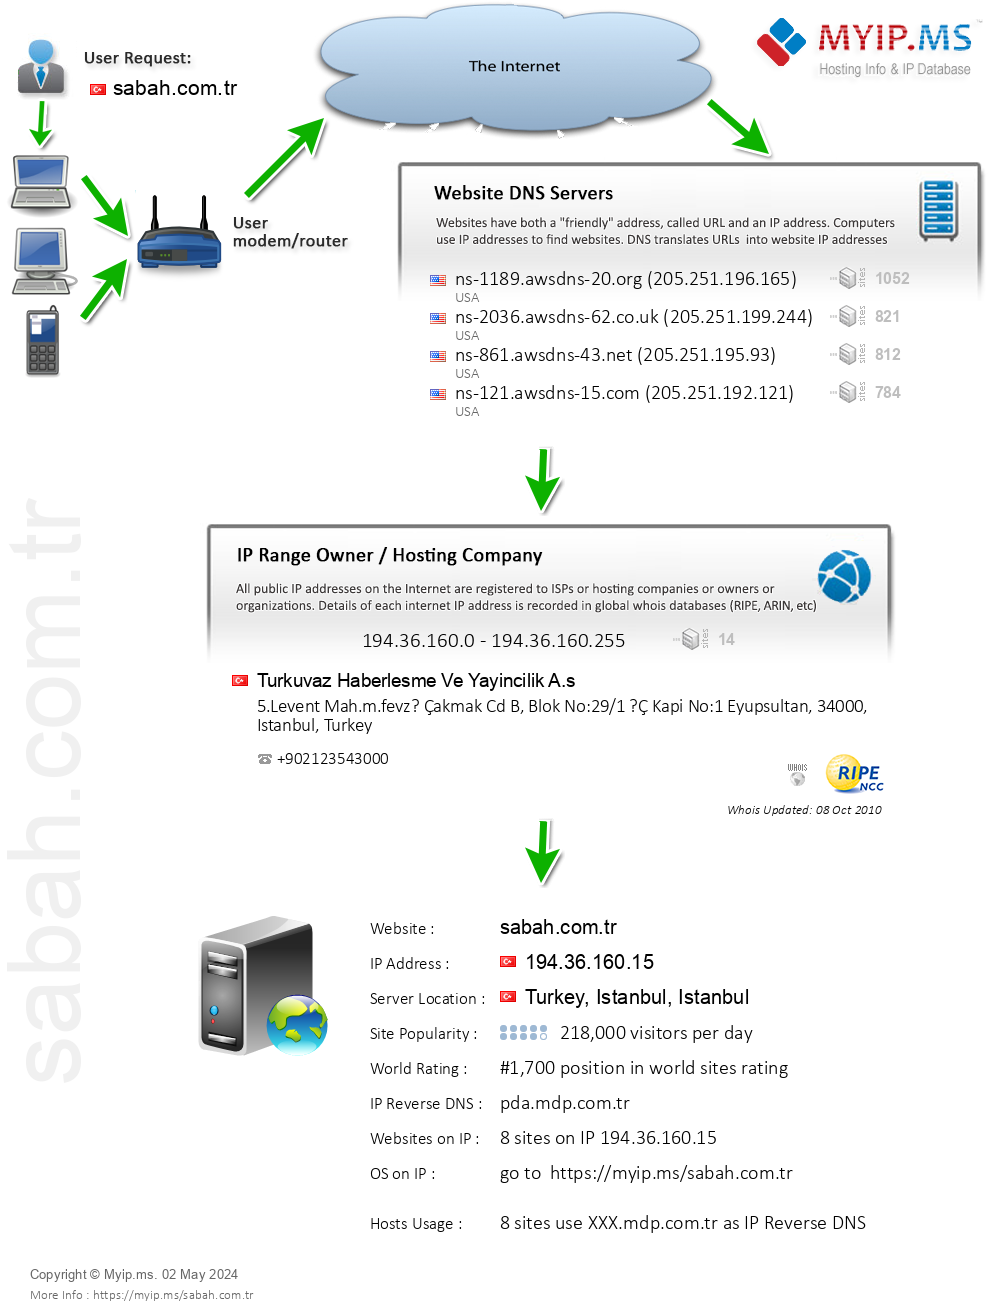 Sabah.com.tr - Website Hosting Visual IP Diagram